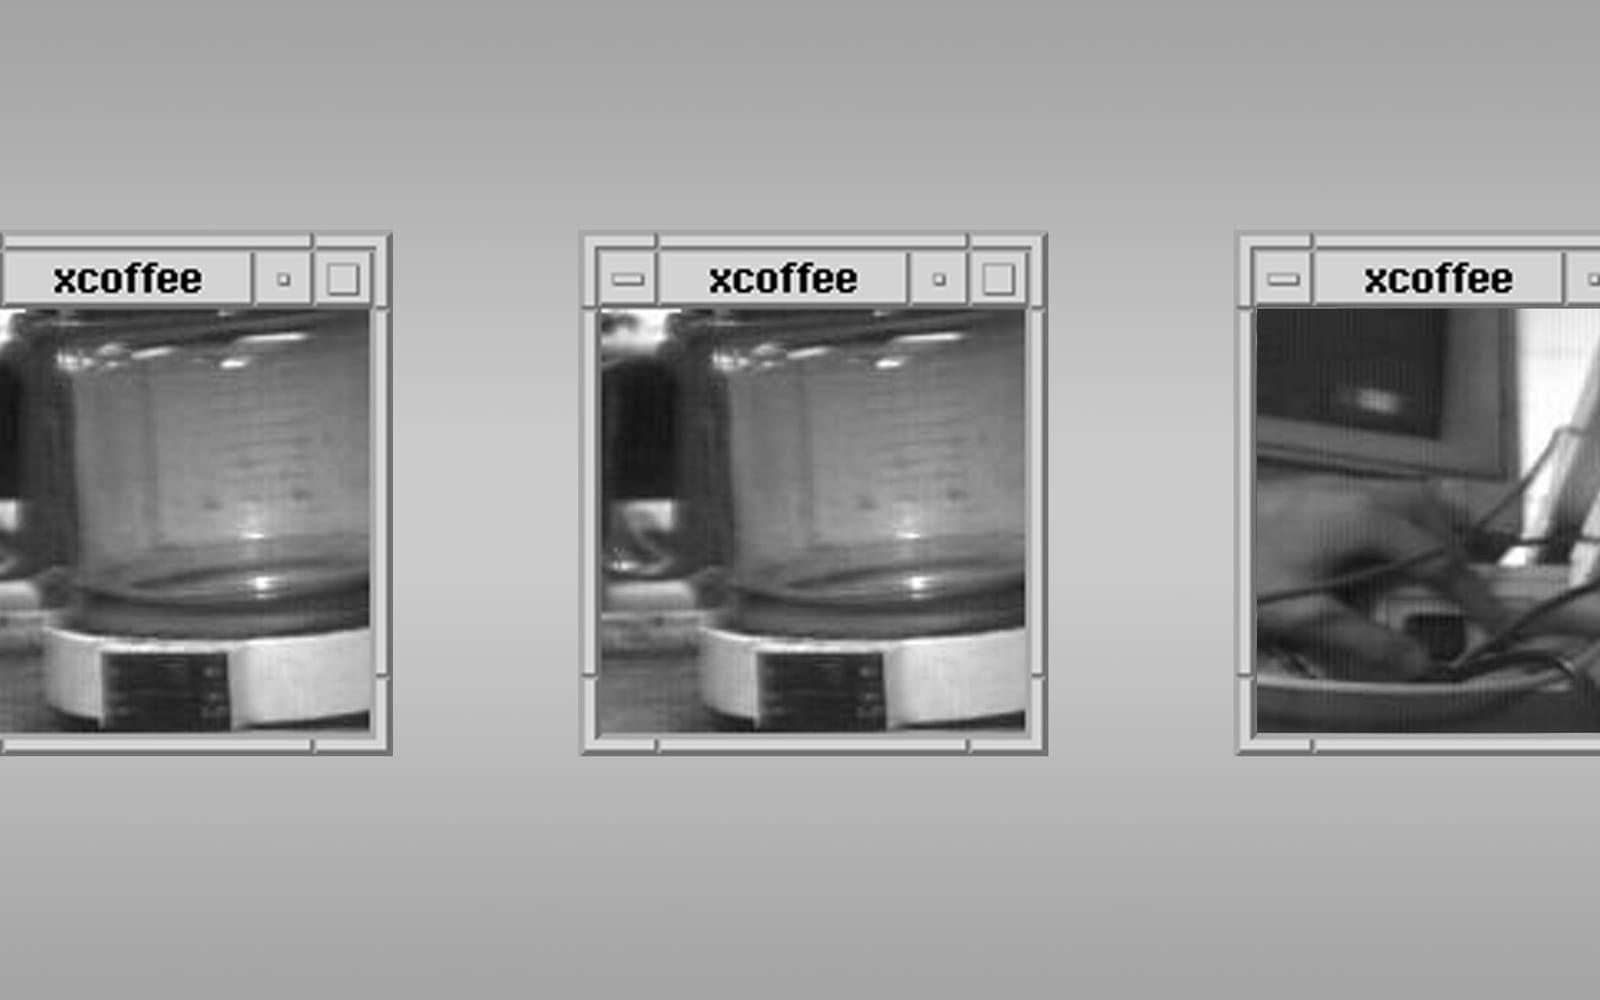 <strong>FÖRSTA WEBBKAMERAN.</strong>  Den allra första webbkameran sattes upp av datatekniker på University of Cambridge och hade ett enda syfte: Att filma deras gemensamma kaffebryggare så att ingen skulle behöva komma dit och överraskas av att kannan var tom. Året var cirka 1991 och det skulle dröja till den 22 november 1993 innan liveströmmen den nådde den <a href="http://www.cl.cam.ac.uk/coffee/coffee.html" target="_blank">offentliga webben</a>. Kameran, som fick smeknamnet The Trojan room coffee pot, stod på i tio år innan den slutligen såldes som memoribilia på Ebay. Äldsta webkameran fortfarande i bruk är <a herf="http://www.fogcam.org" target="_blank">Fogcam</a> i San Francisco som startade 1994.